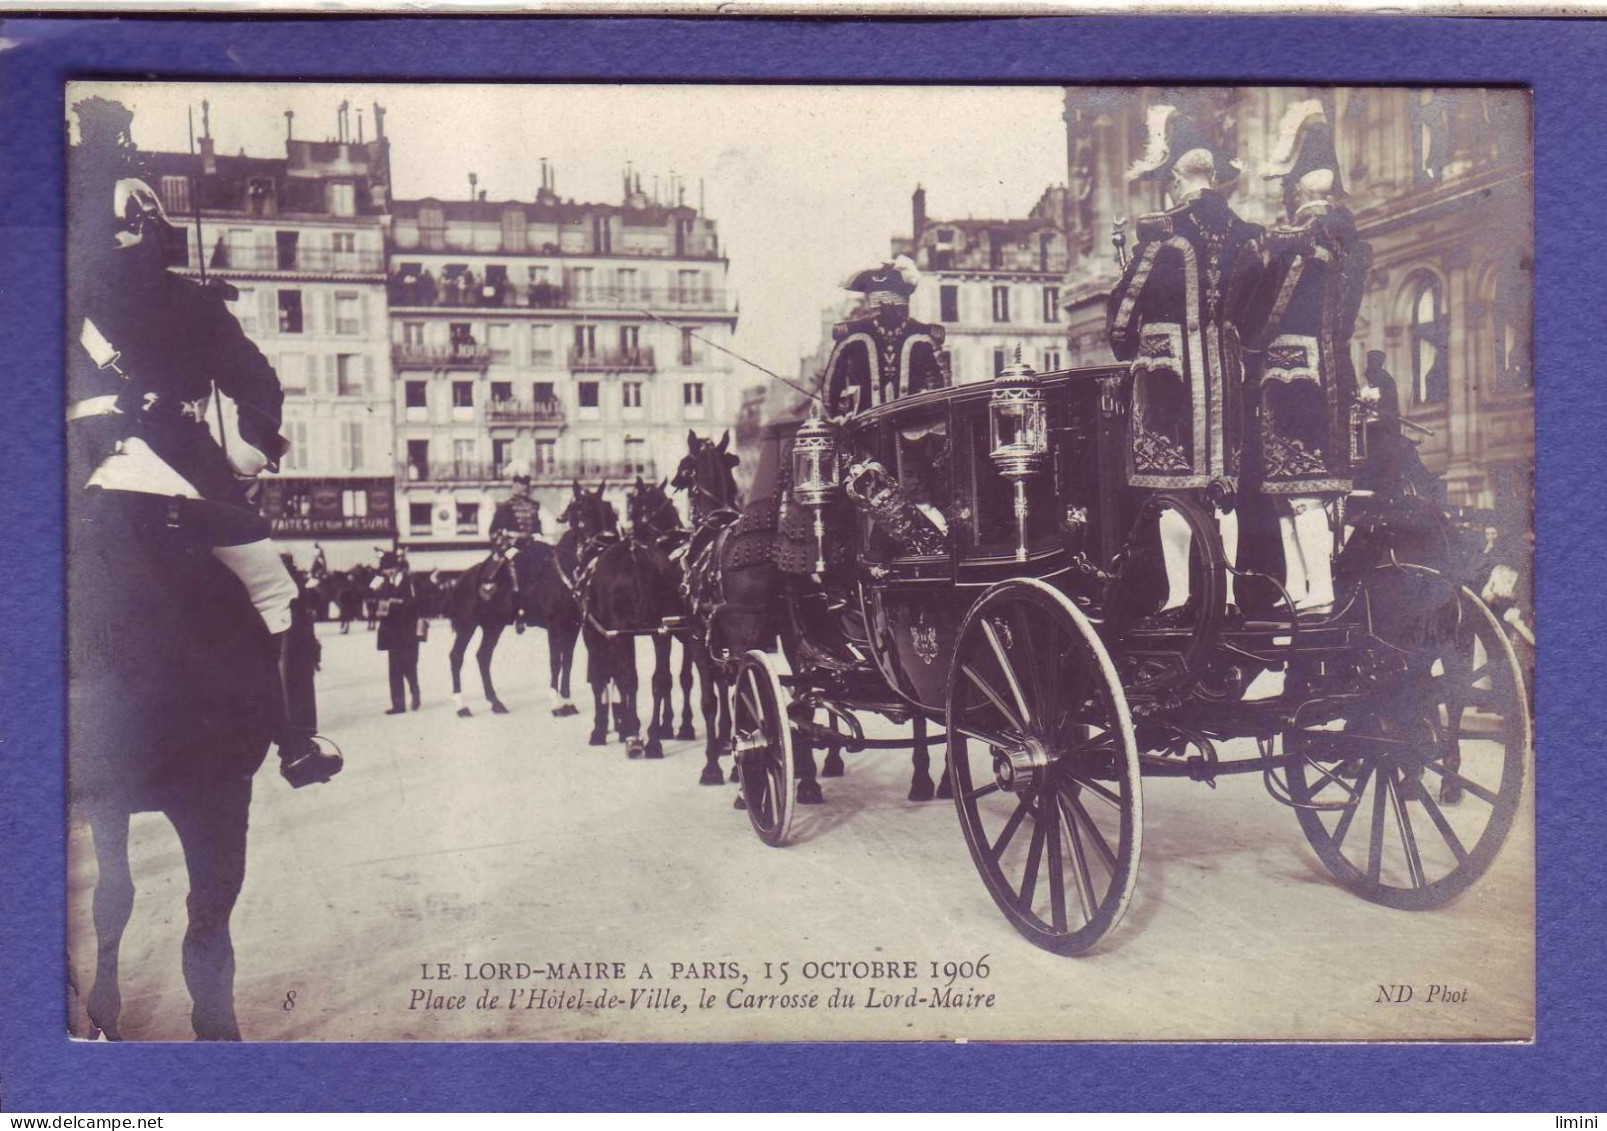 75 - PARIS - PLACE De L'HOTEL De VILLE - LORD MAIRE 15 OCTOBRE 1906 - ATTELAGE -  - Sonstige Sehenswürdigkeiten